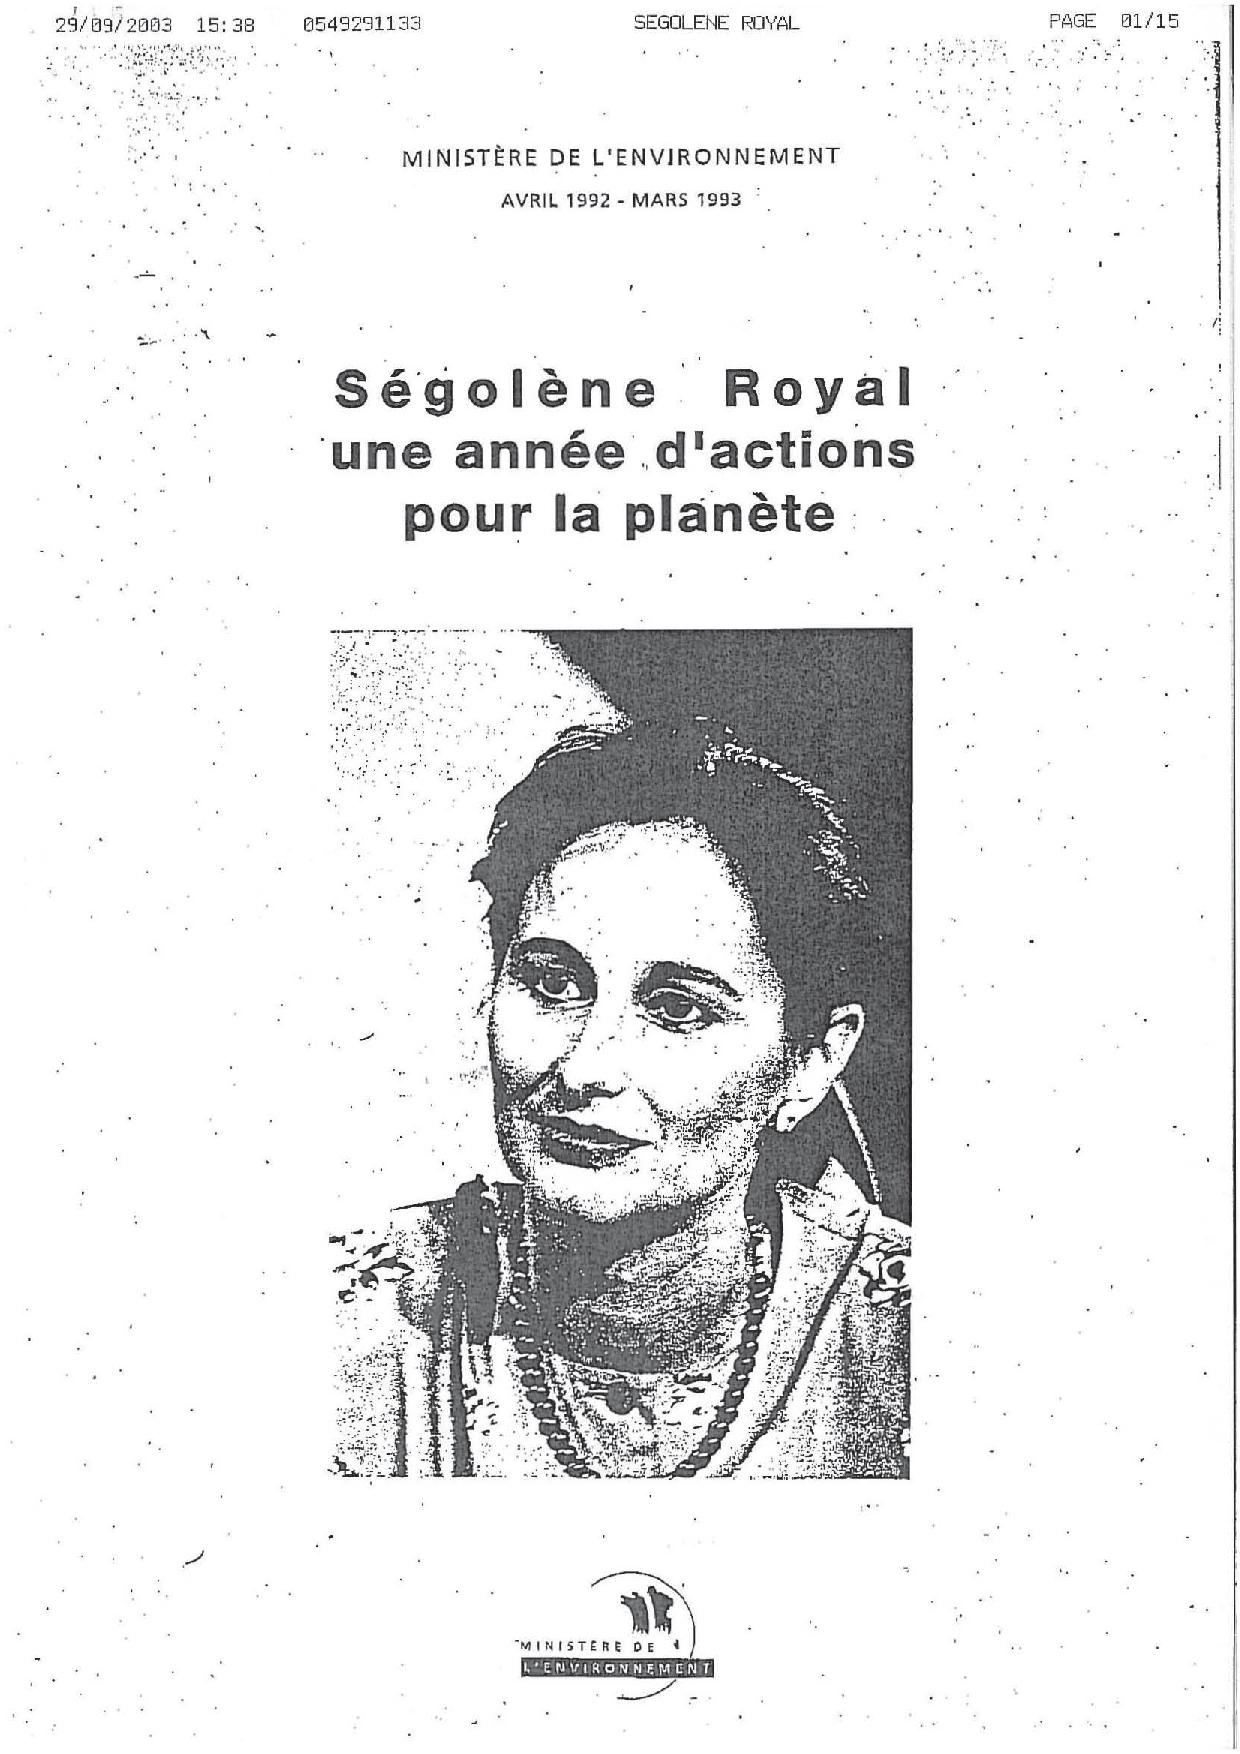 Bilan du Ministère de l'environnement de 1992 à 1993